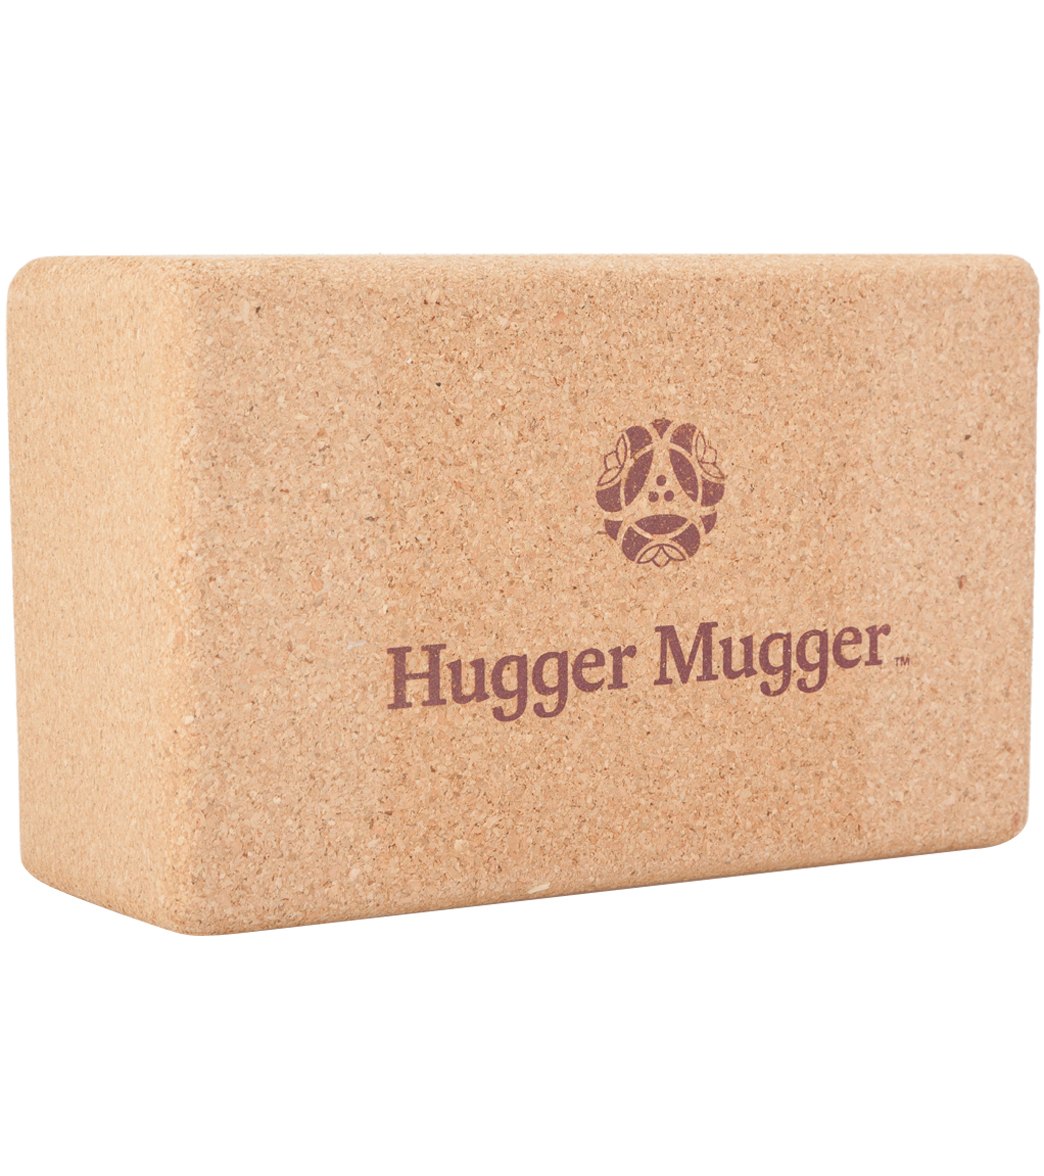 3 in. Foam Yoga Block - Hugger Mugger